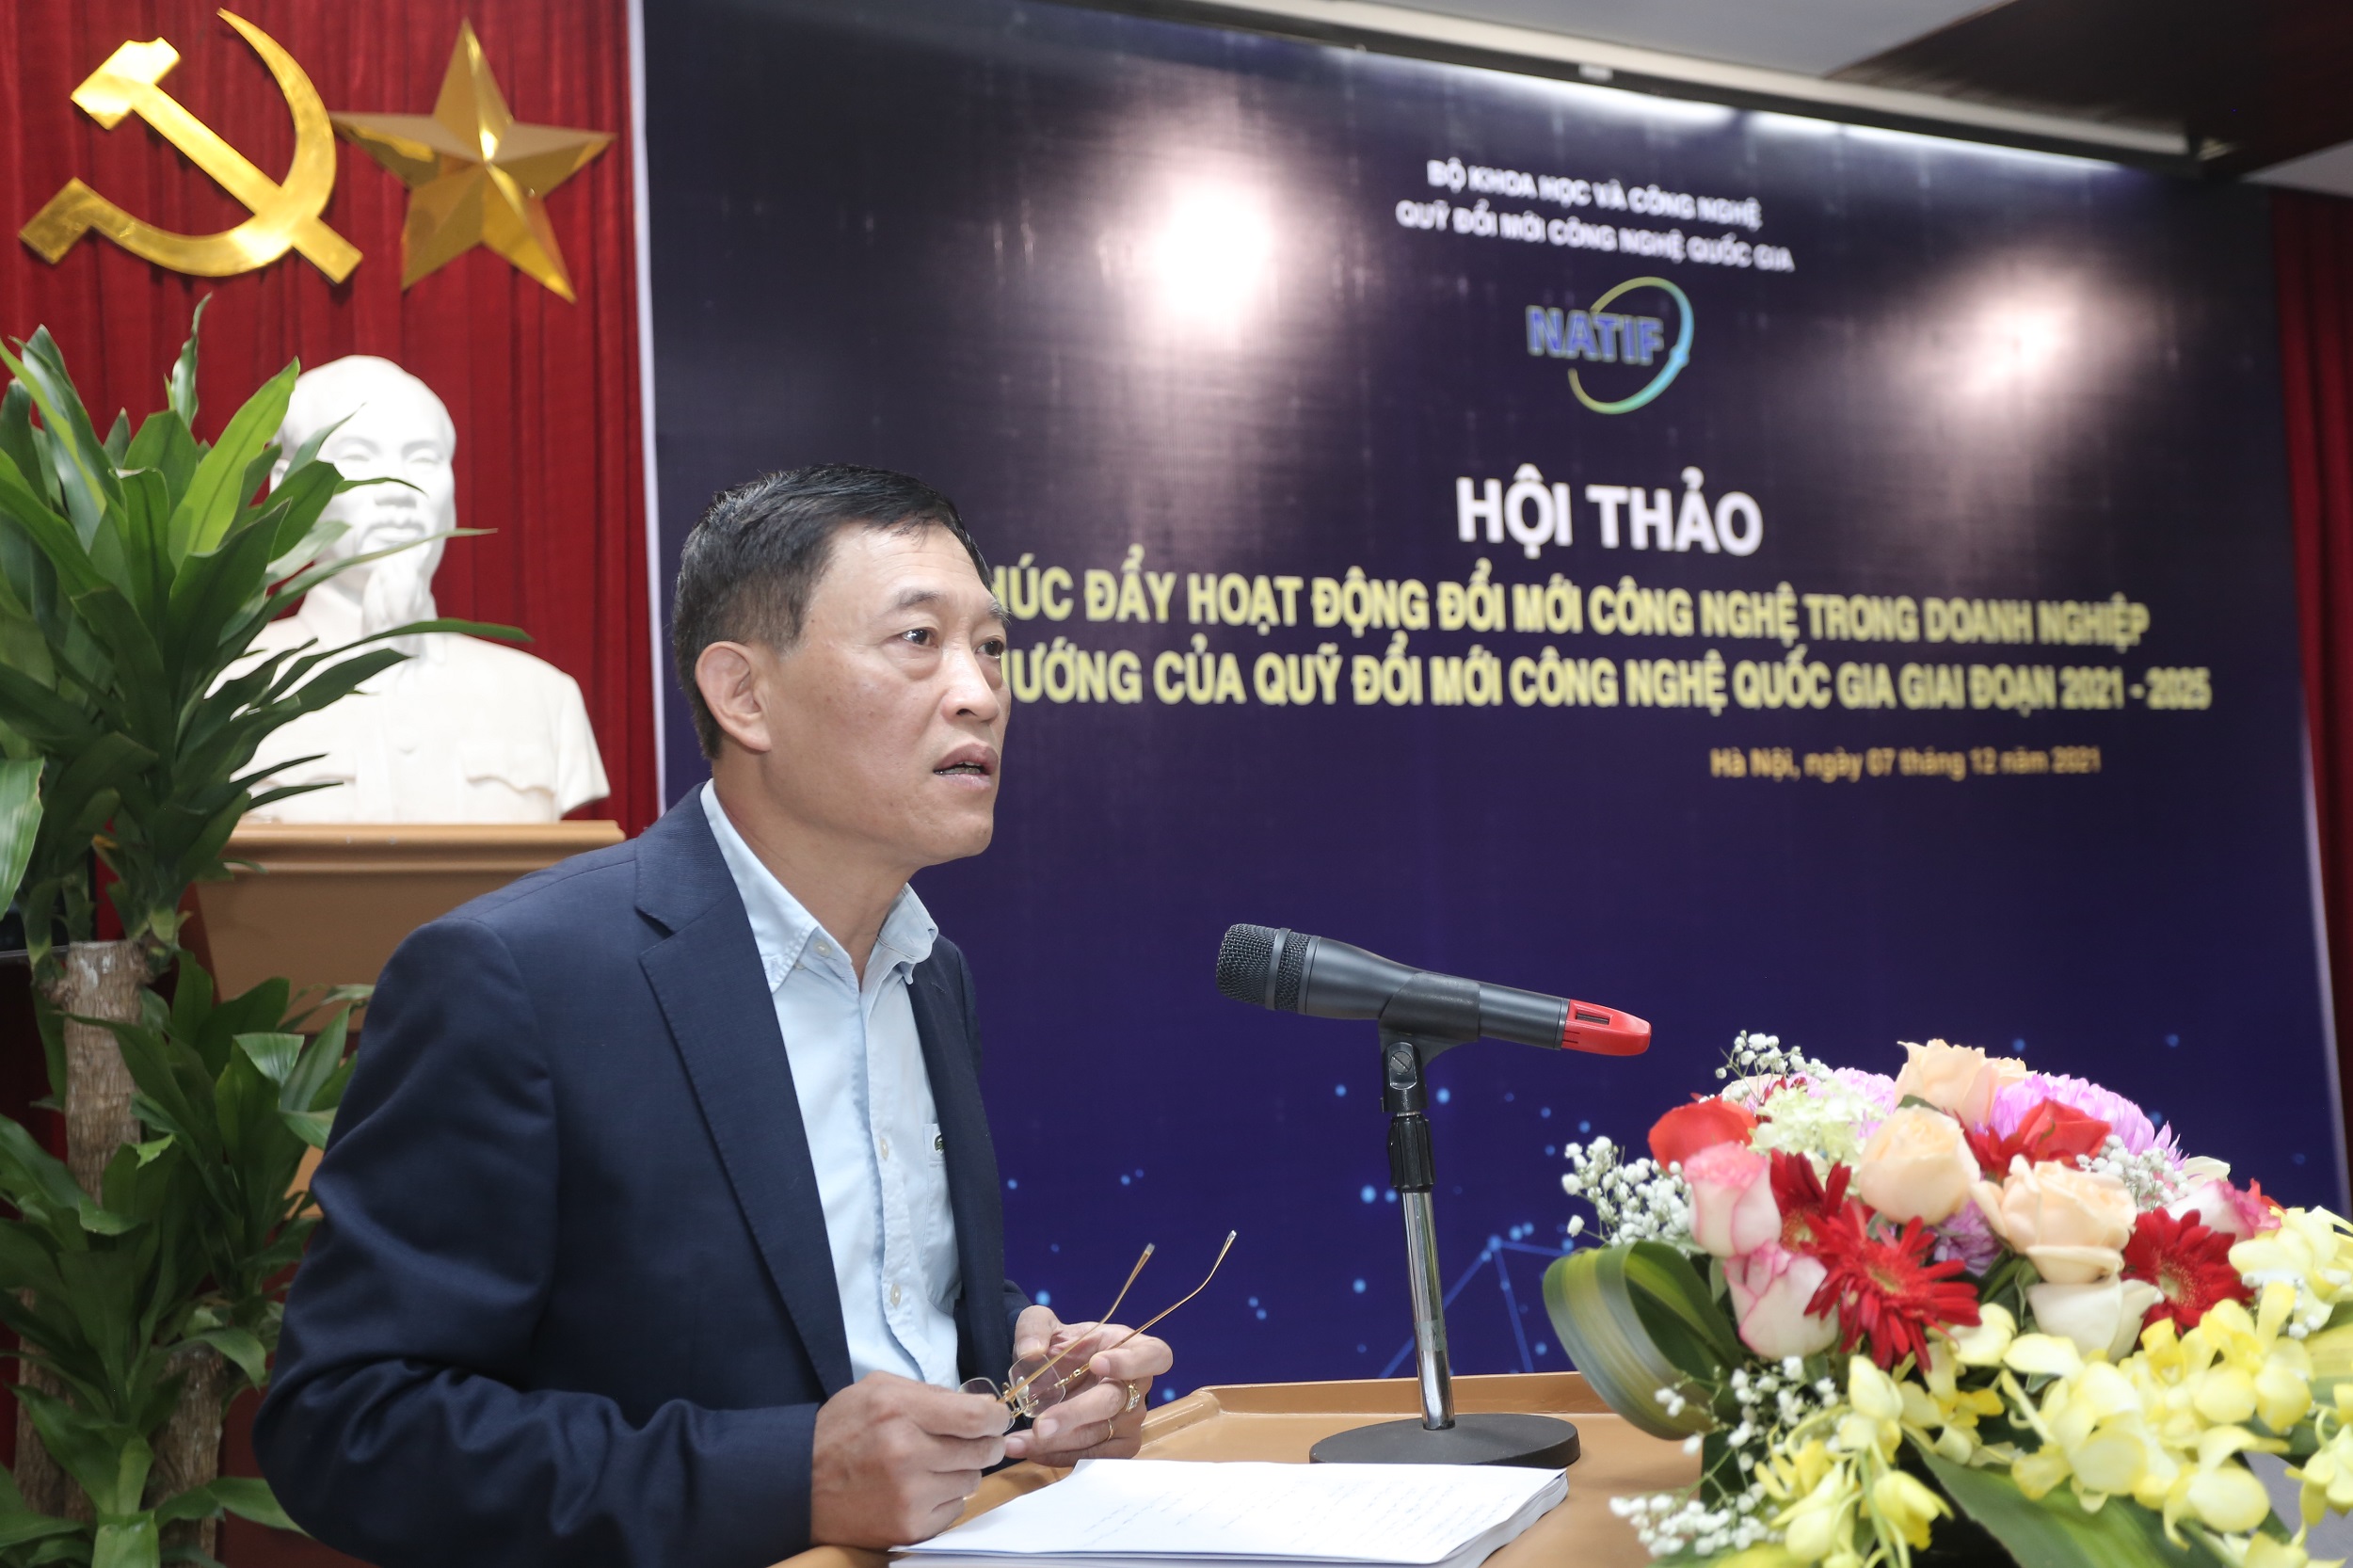 TS. Trần Văn Tùng – Thứ trưởng Bộ KH&CN, Chủ tịch Hội đồng Quản lý Quỹ phát biểu tại Hội thảo